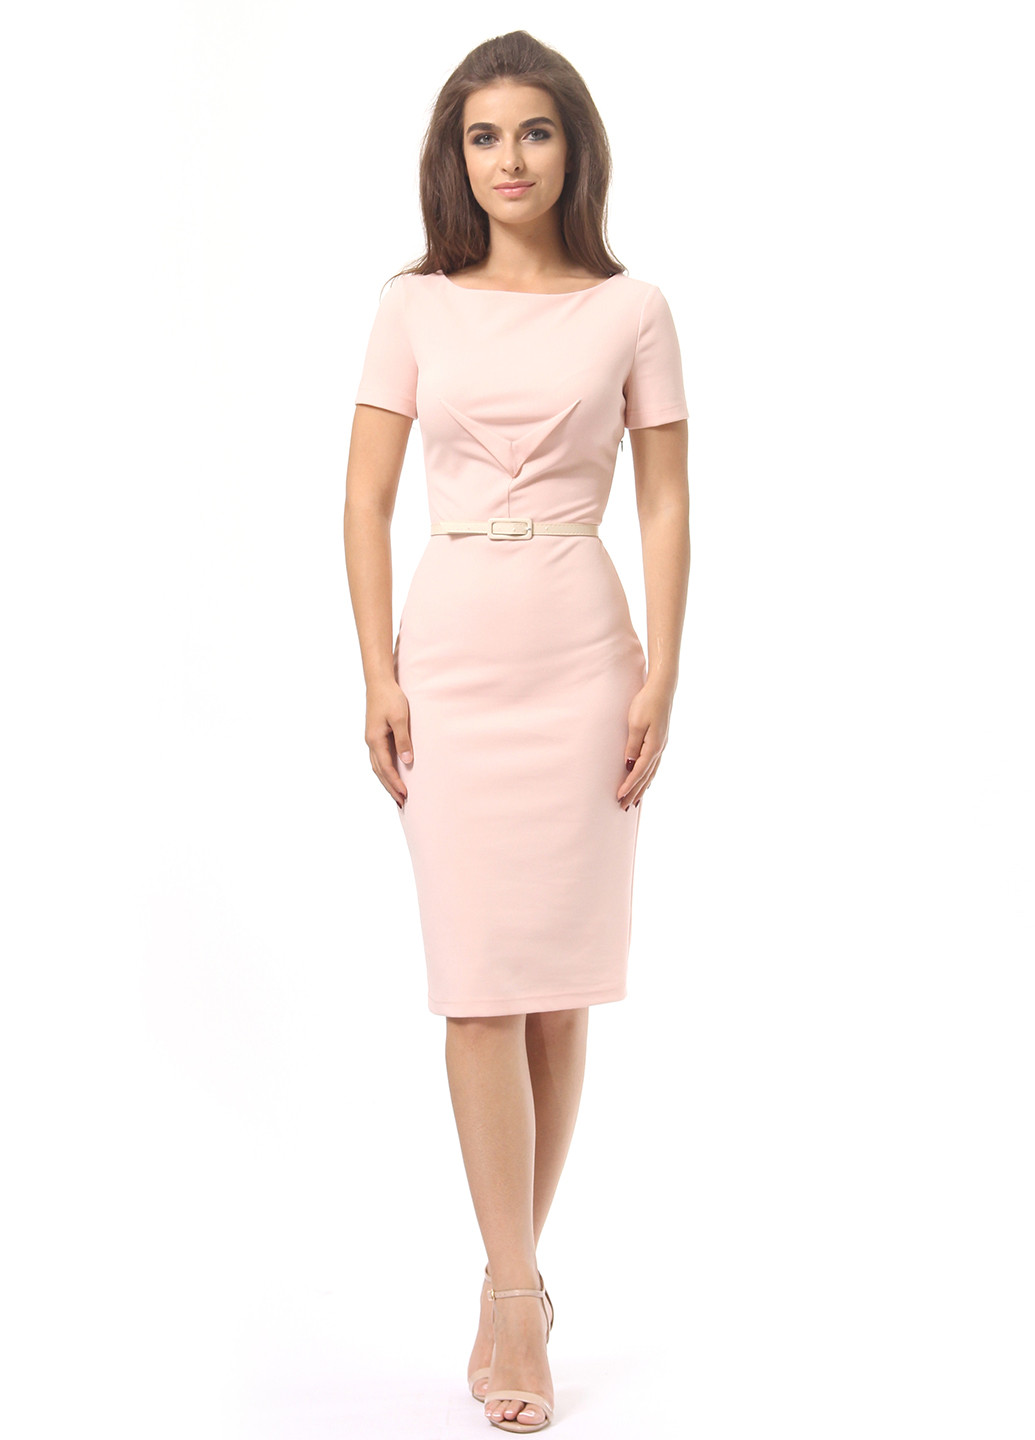 Светло-розовое деловое платье футляр Lada Lucci однотонное